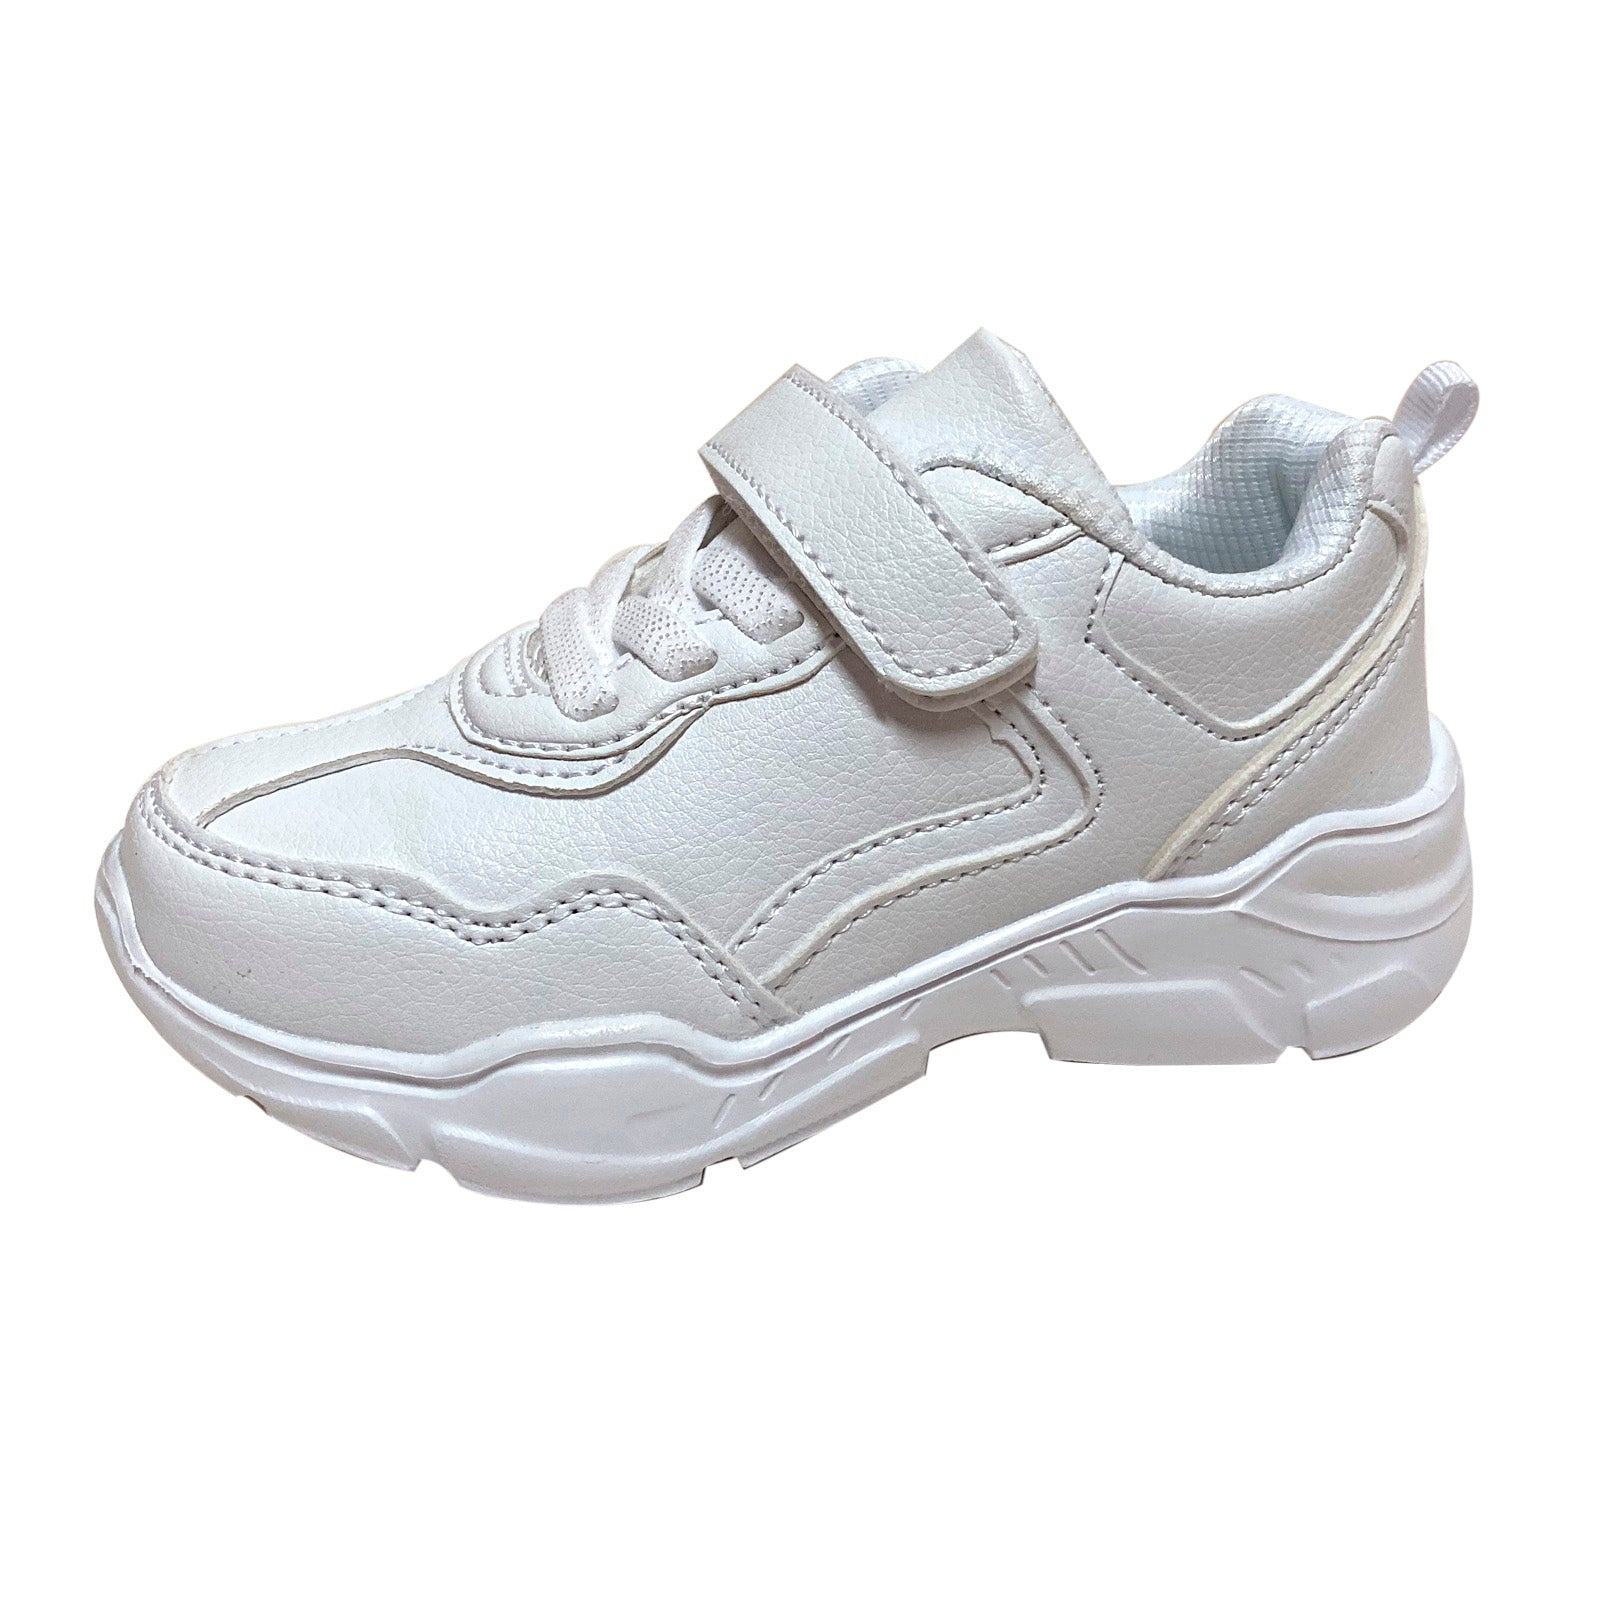 S3000 White School Shoes (EU28-40)